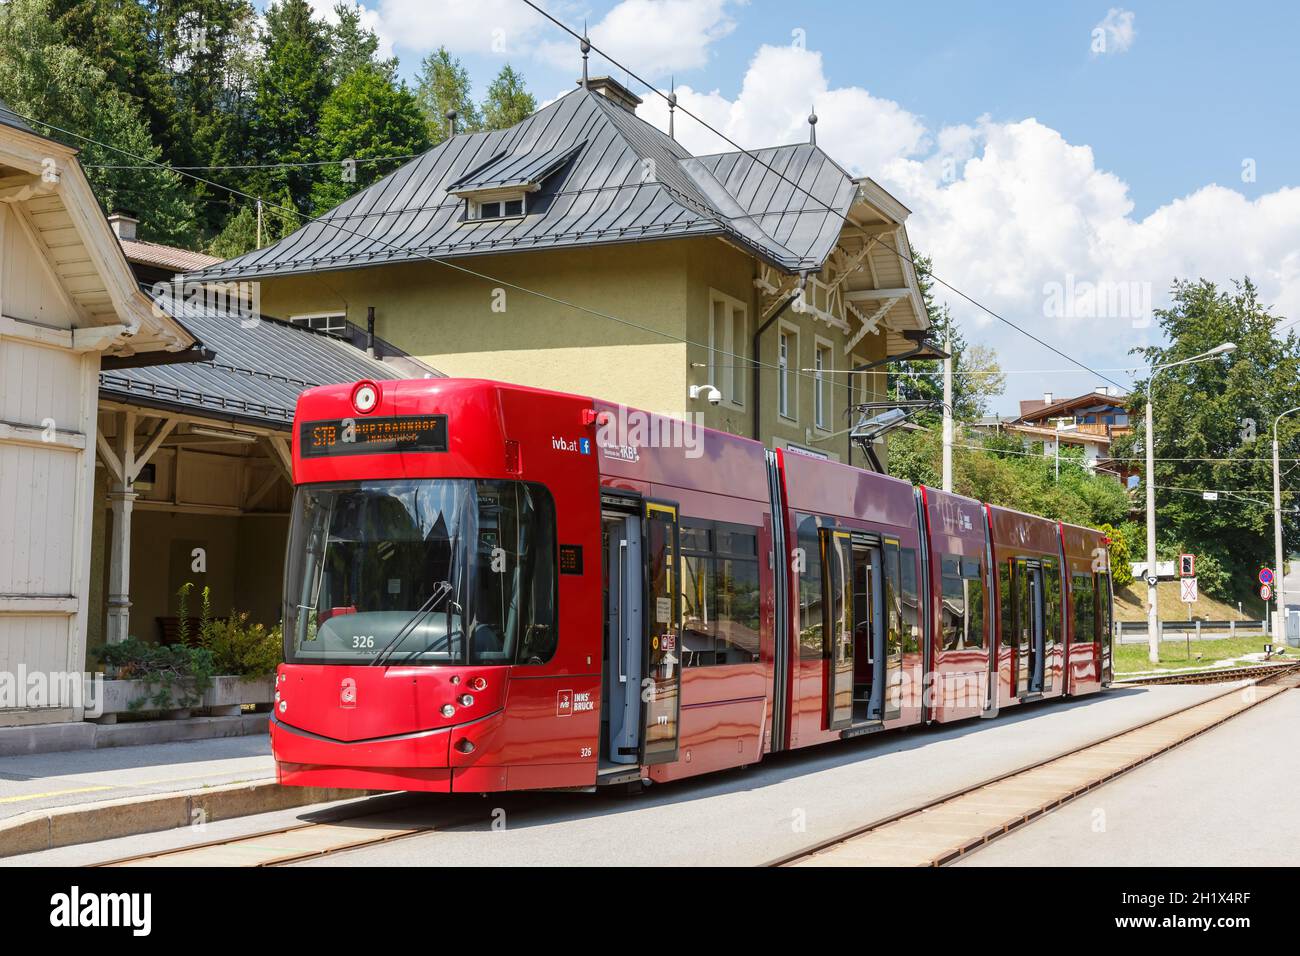 Fulpmes, Austria - August 1, 2020: Stubaitalbahn Innsbruck Tram Bombardier train Fulpmes station in Austria. Stock Photo